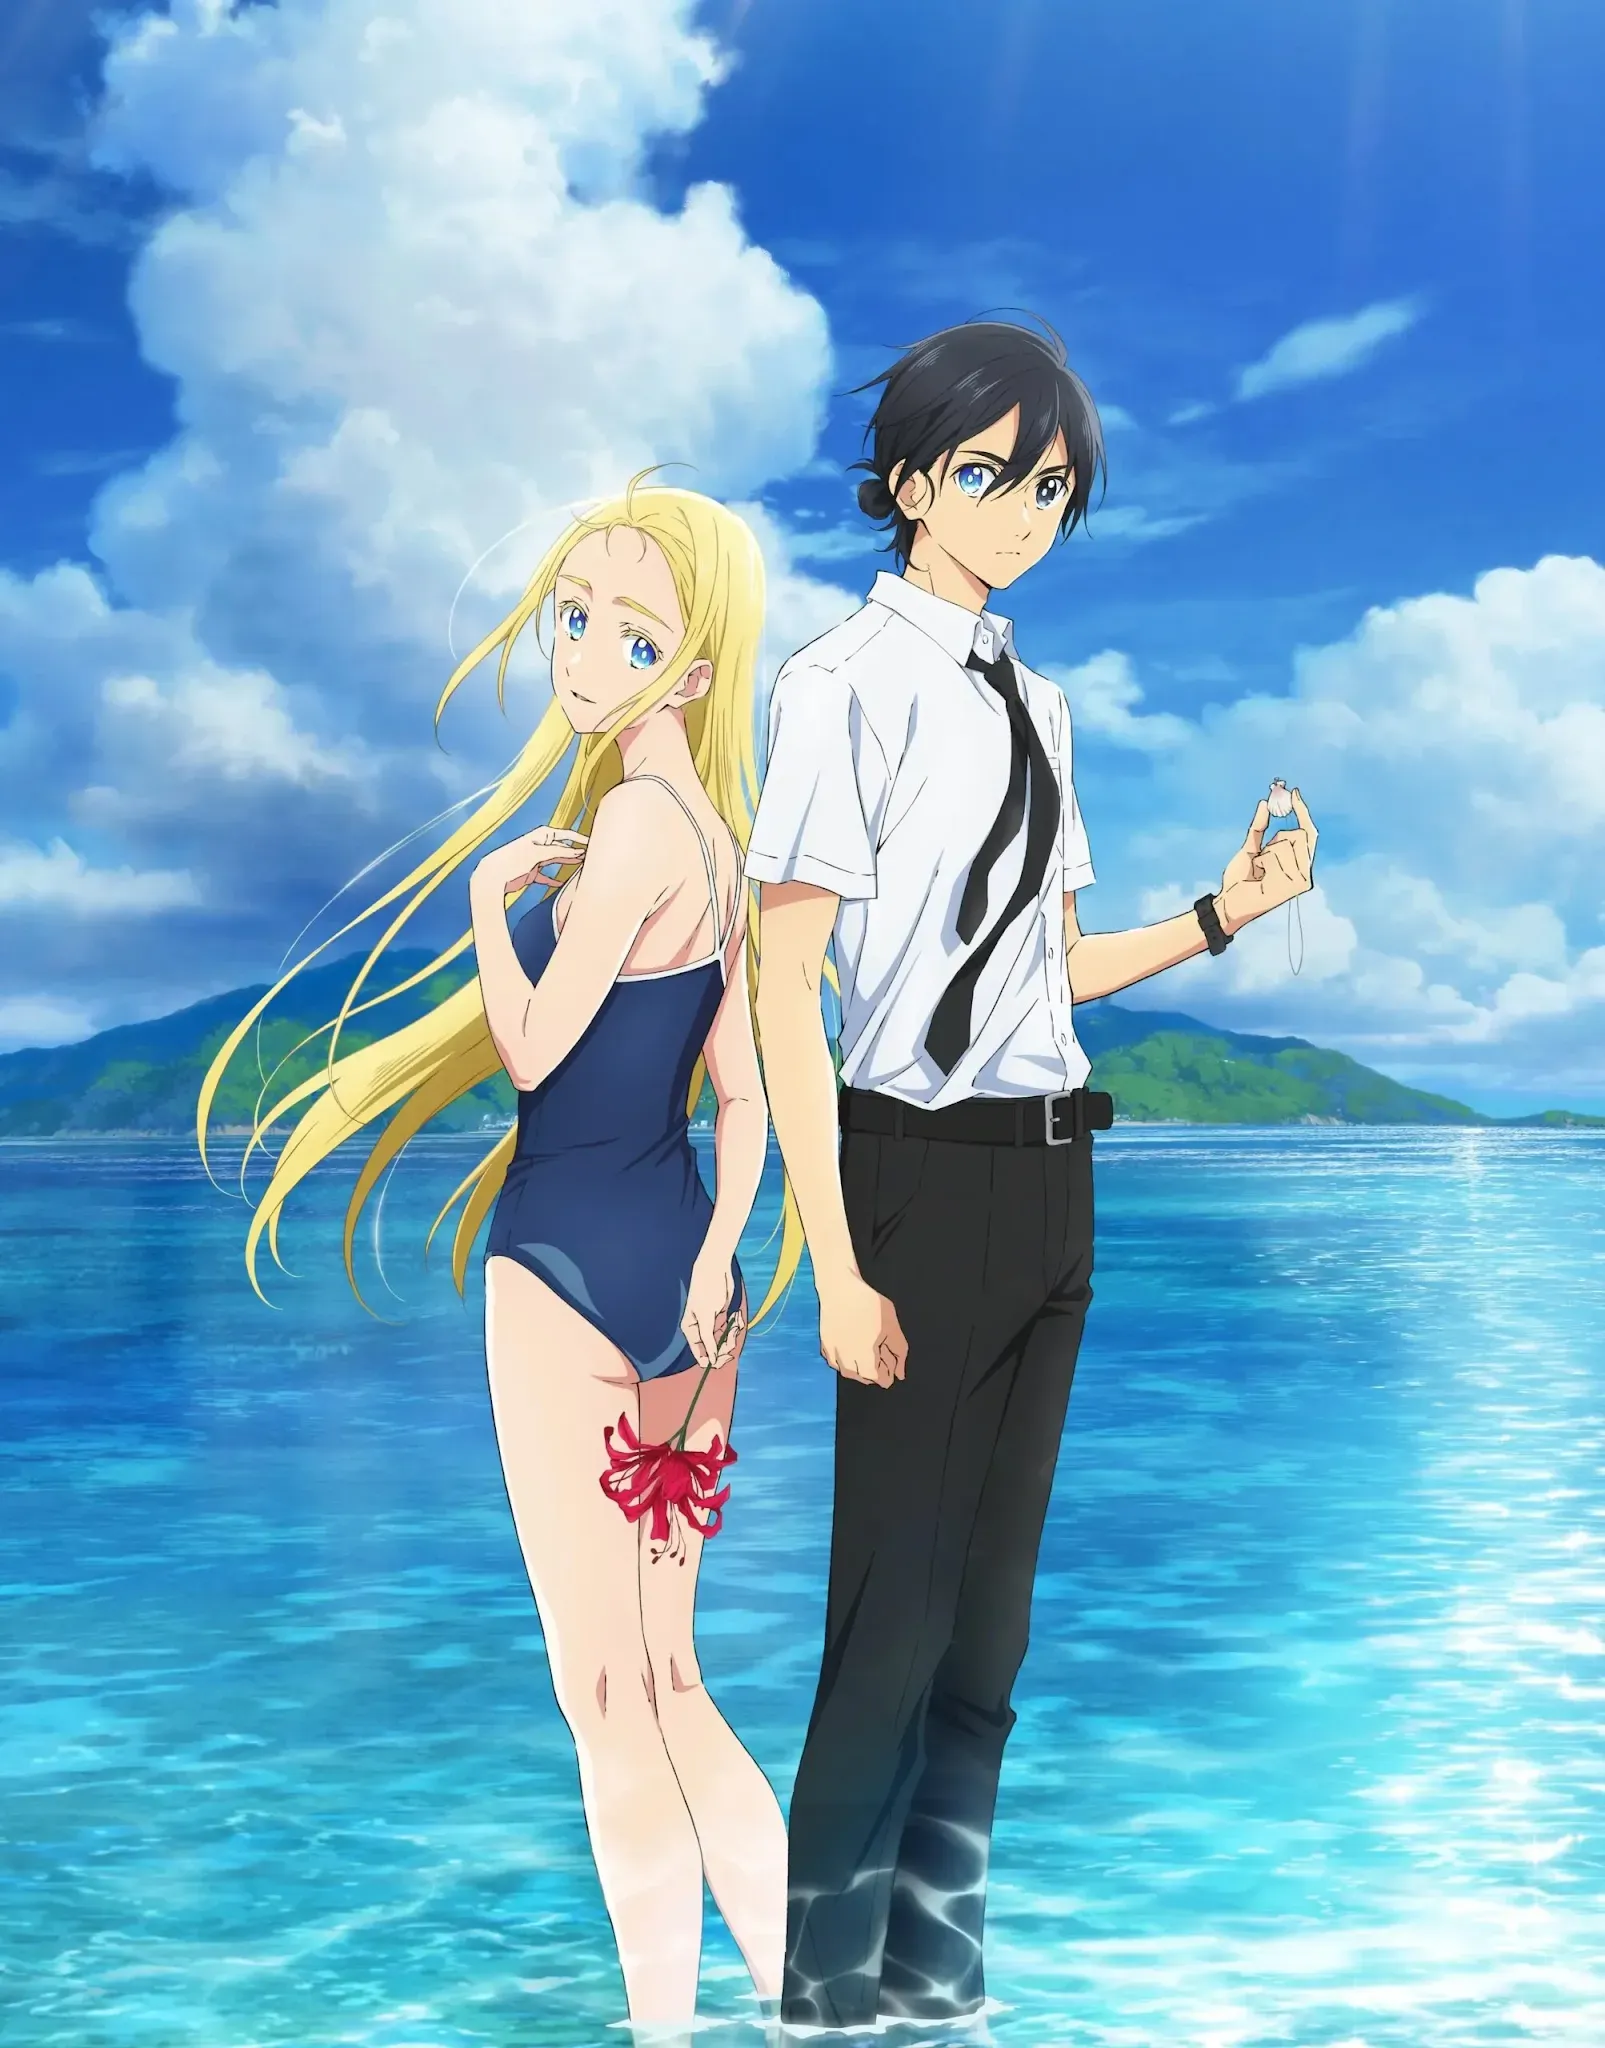 O Anime Summertime Render revelou seu primeiro Vídeo Promocional